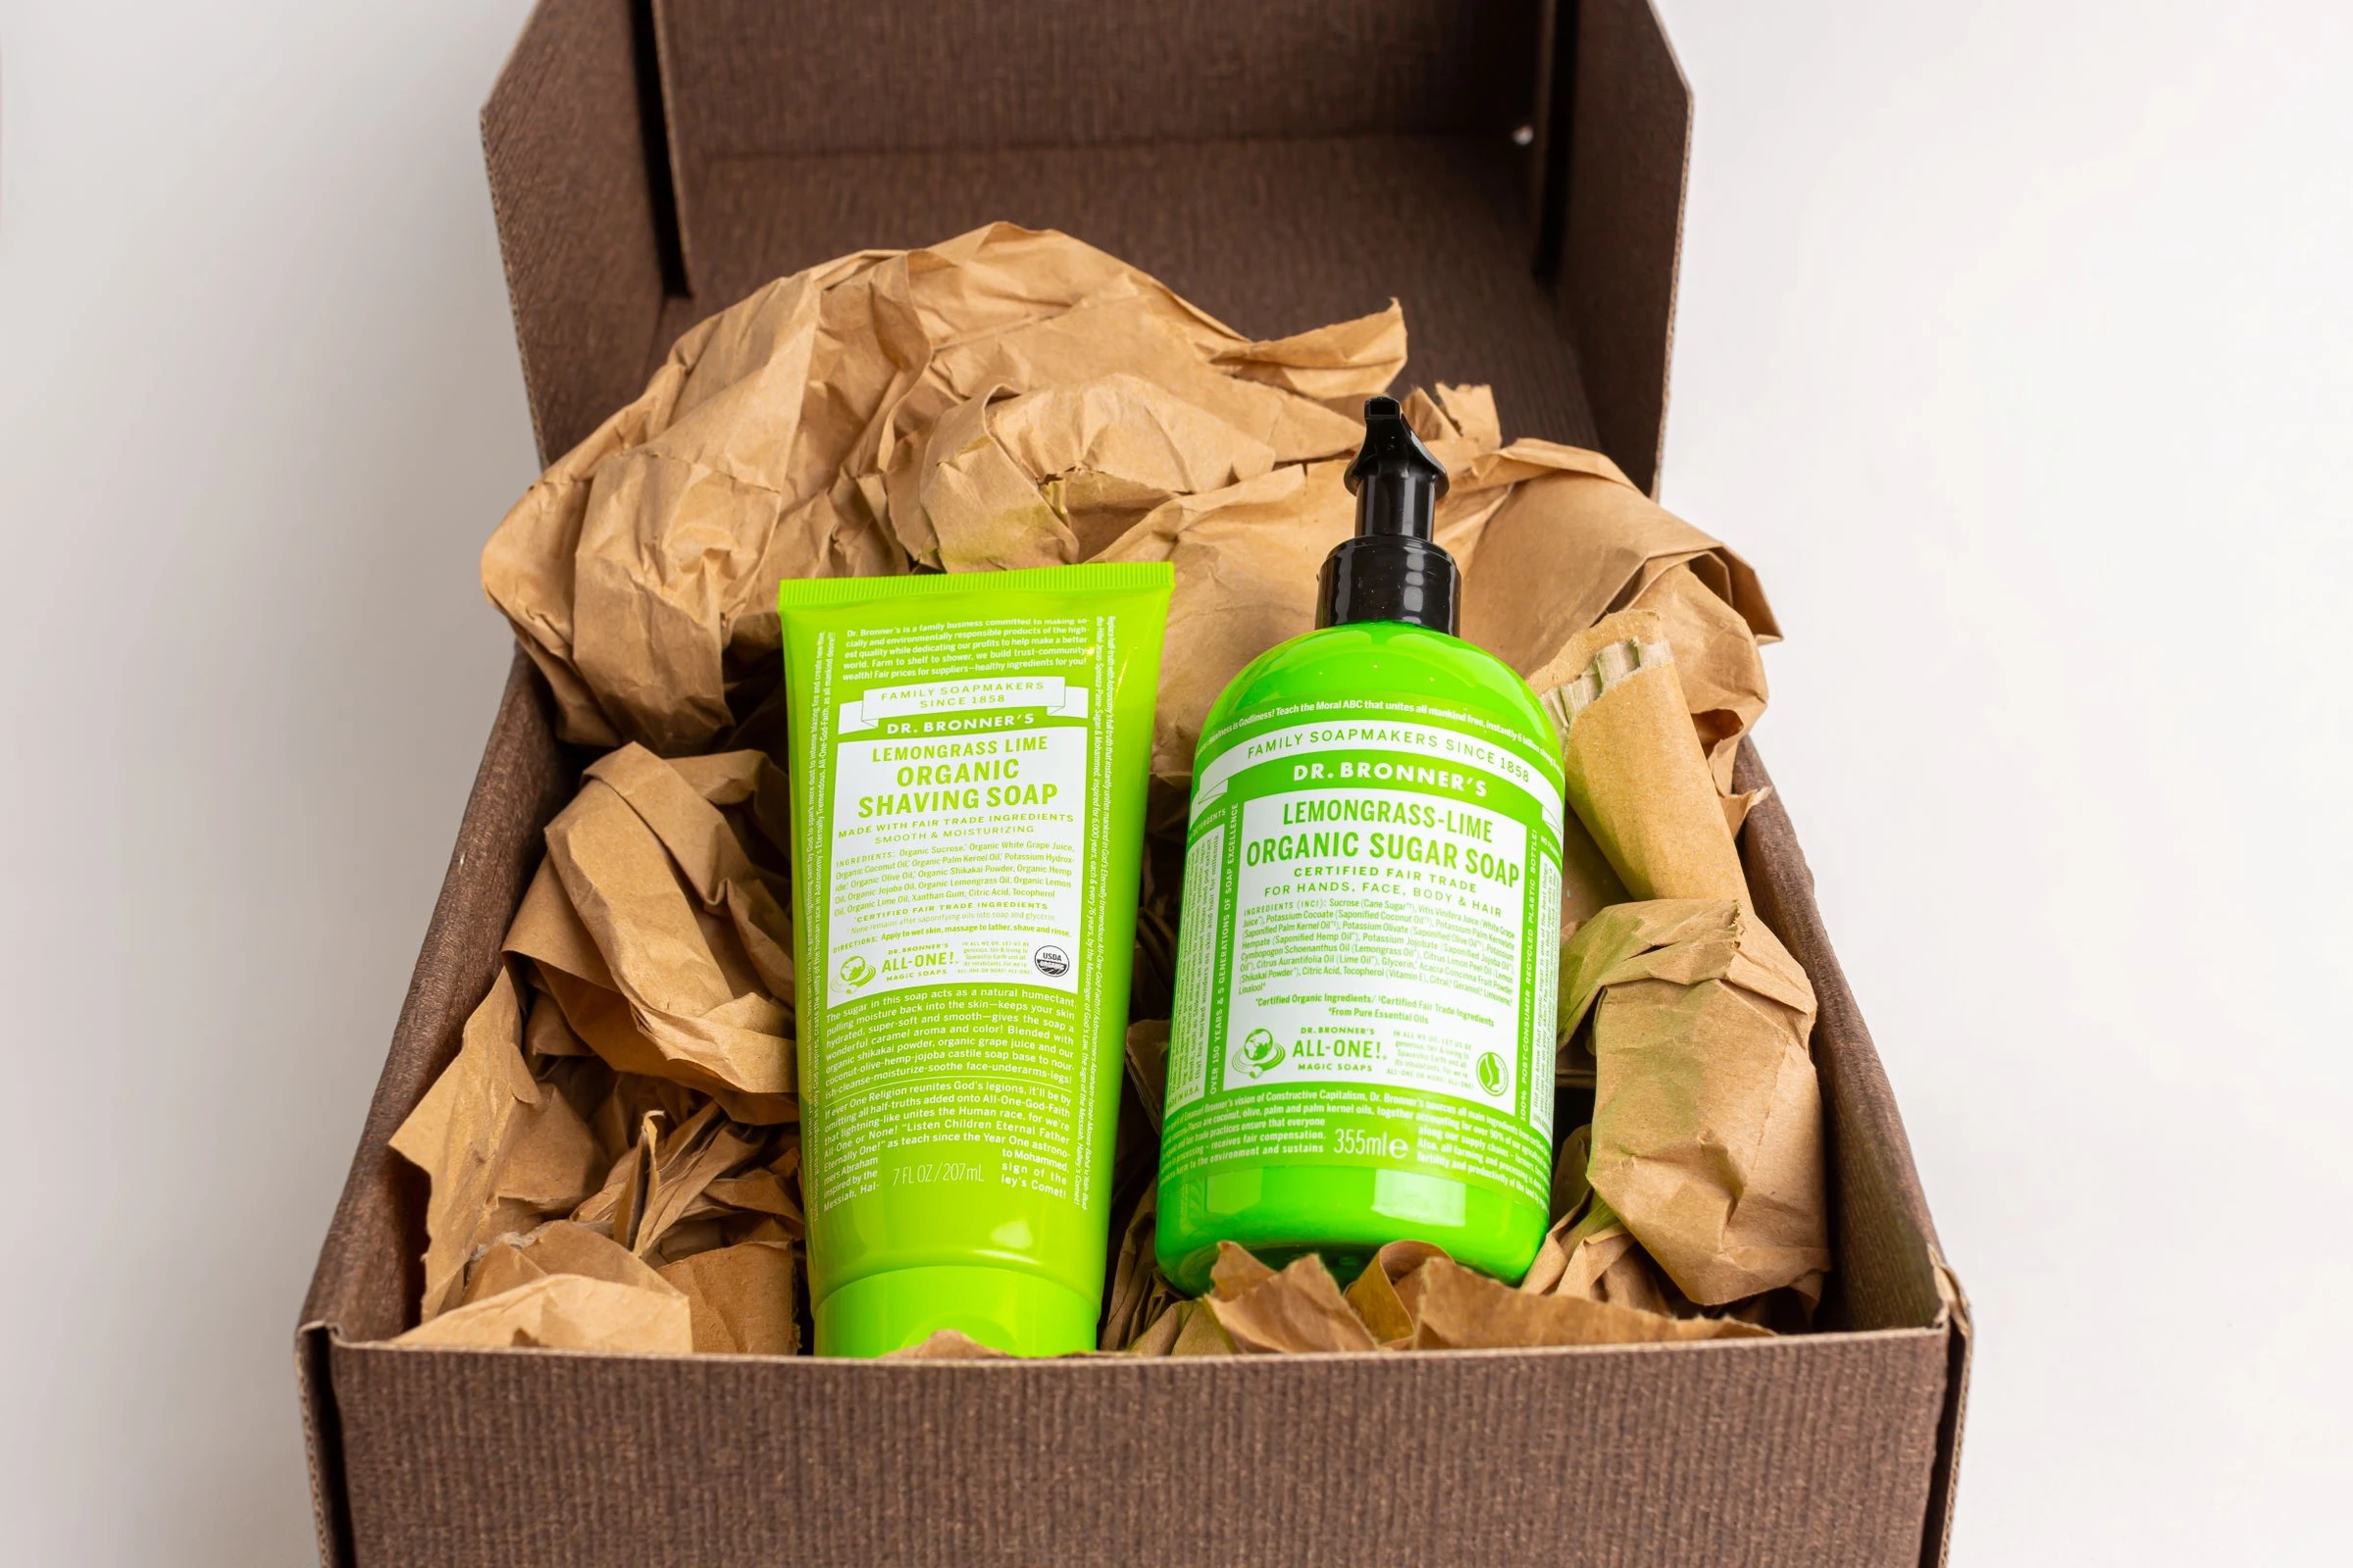 Dr. Bronner's Organic Shaving Soap & Organic Sugar Soap Lemongrass Lime Gift Set (207ml & 355ml)